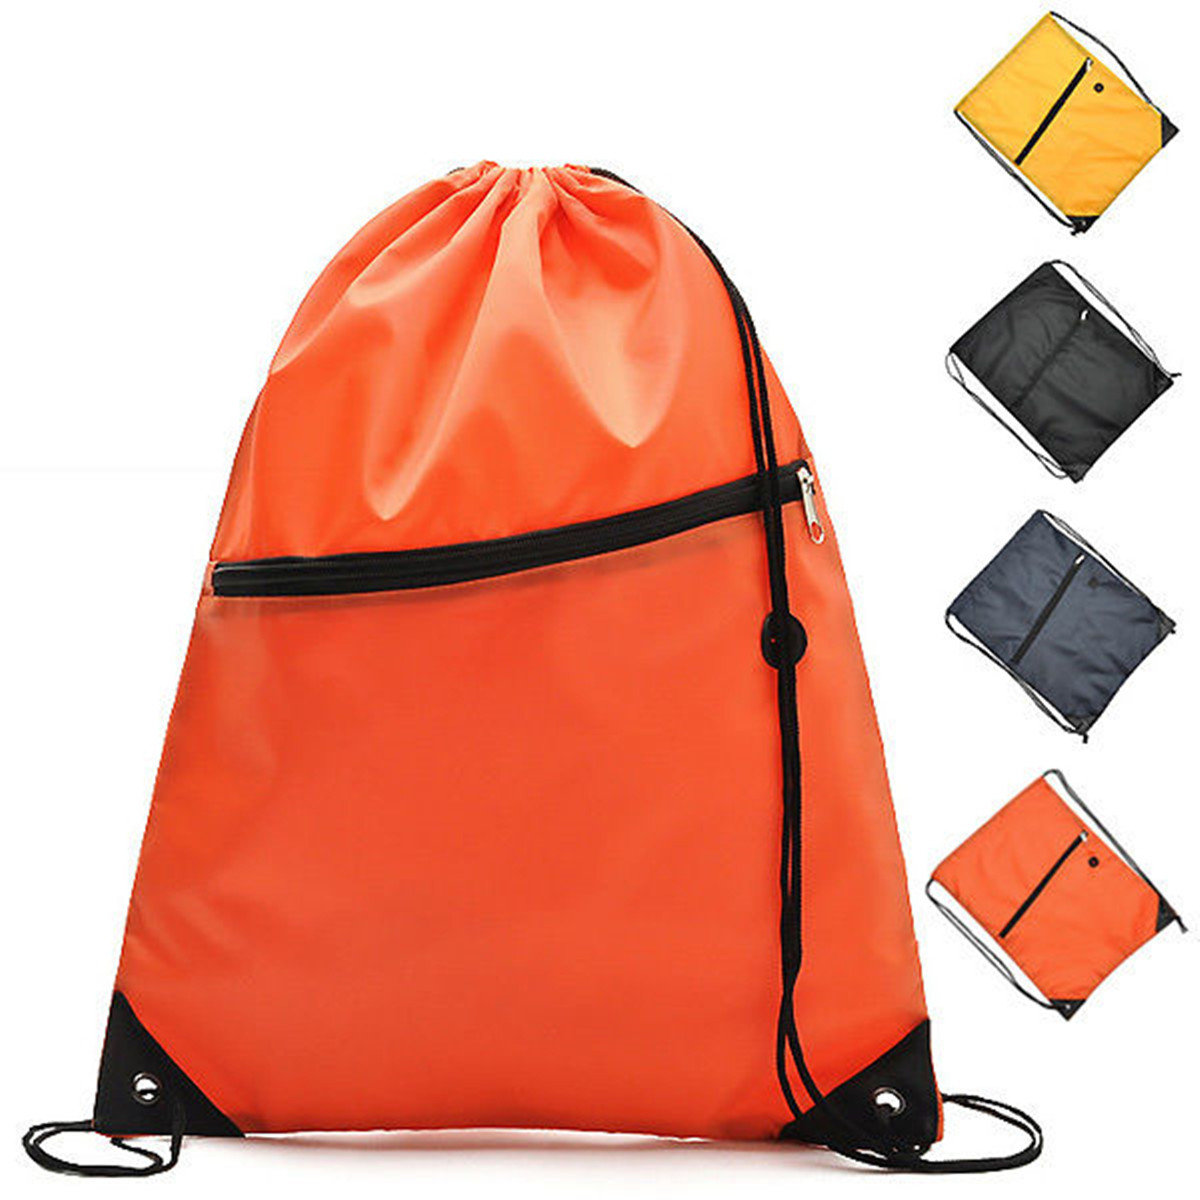 Mochila mochila escolar com cordão para acampamento ao ar livre, esportes infantis